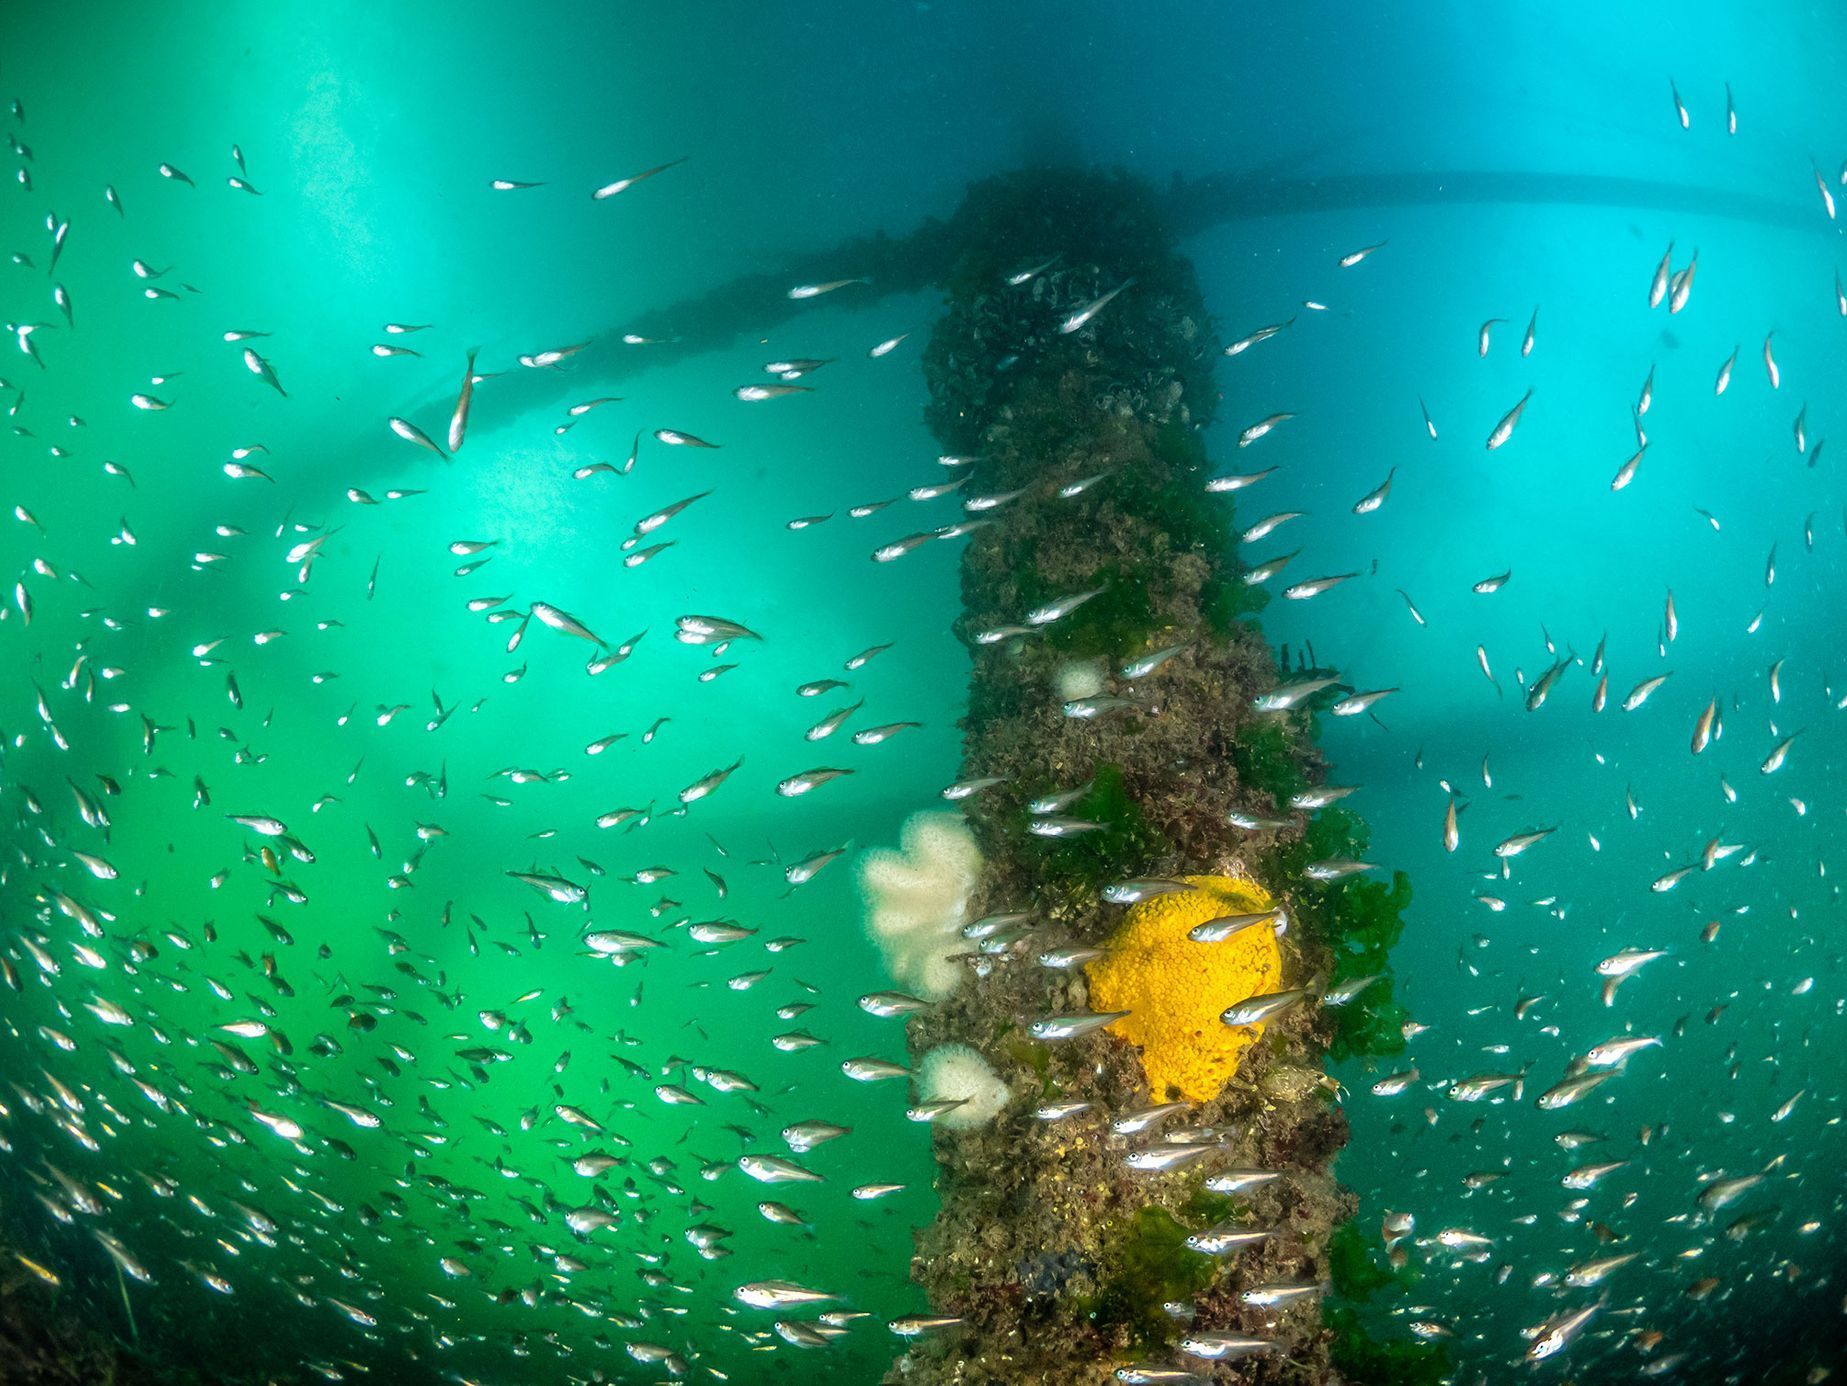 Underwater Photographer of the Year 2020 - vítězné fotografie